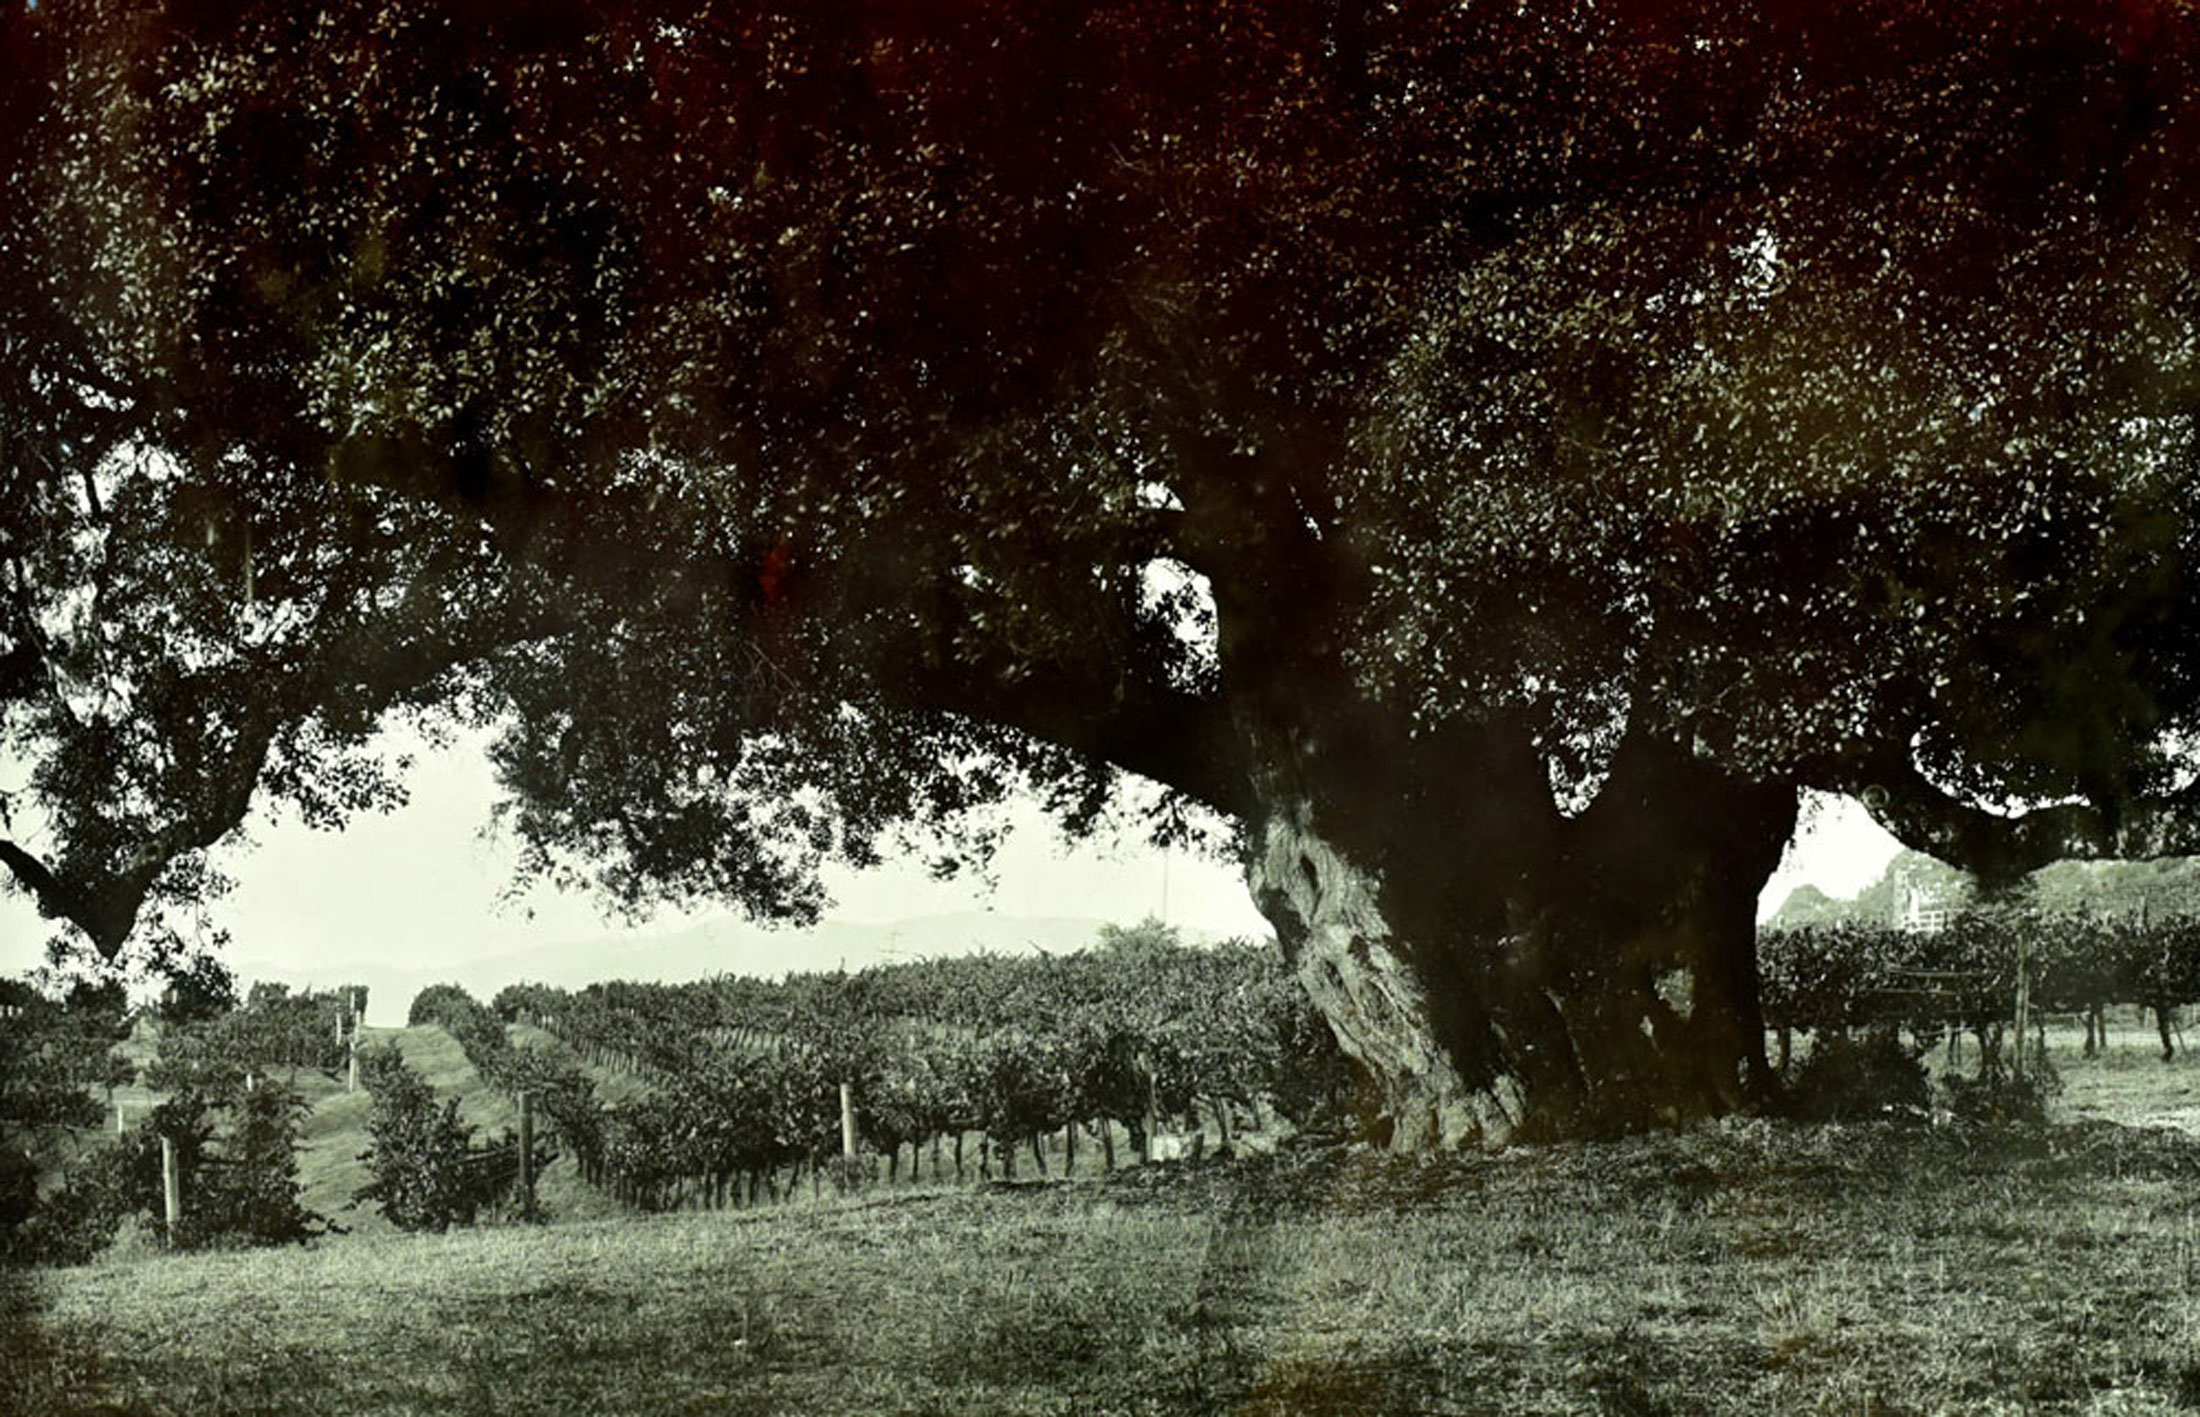 Cerise old oak in a vineyard